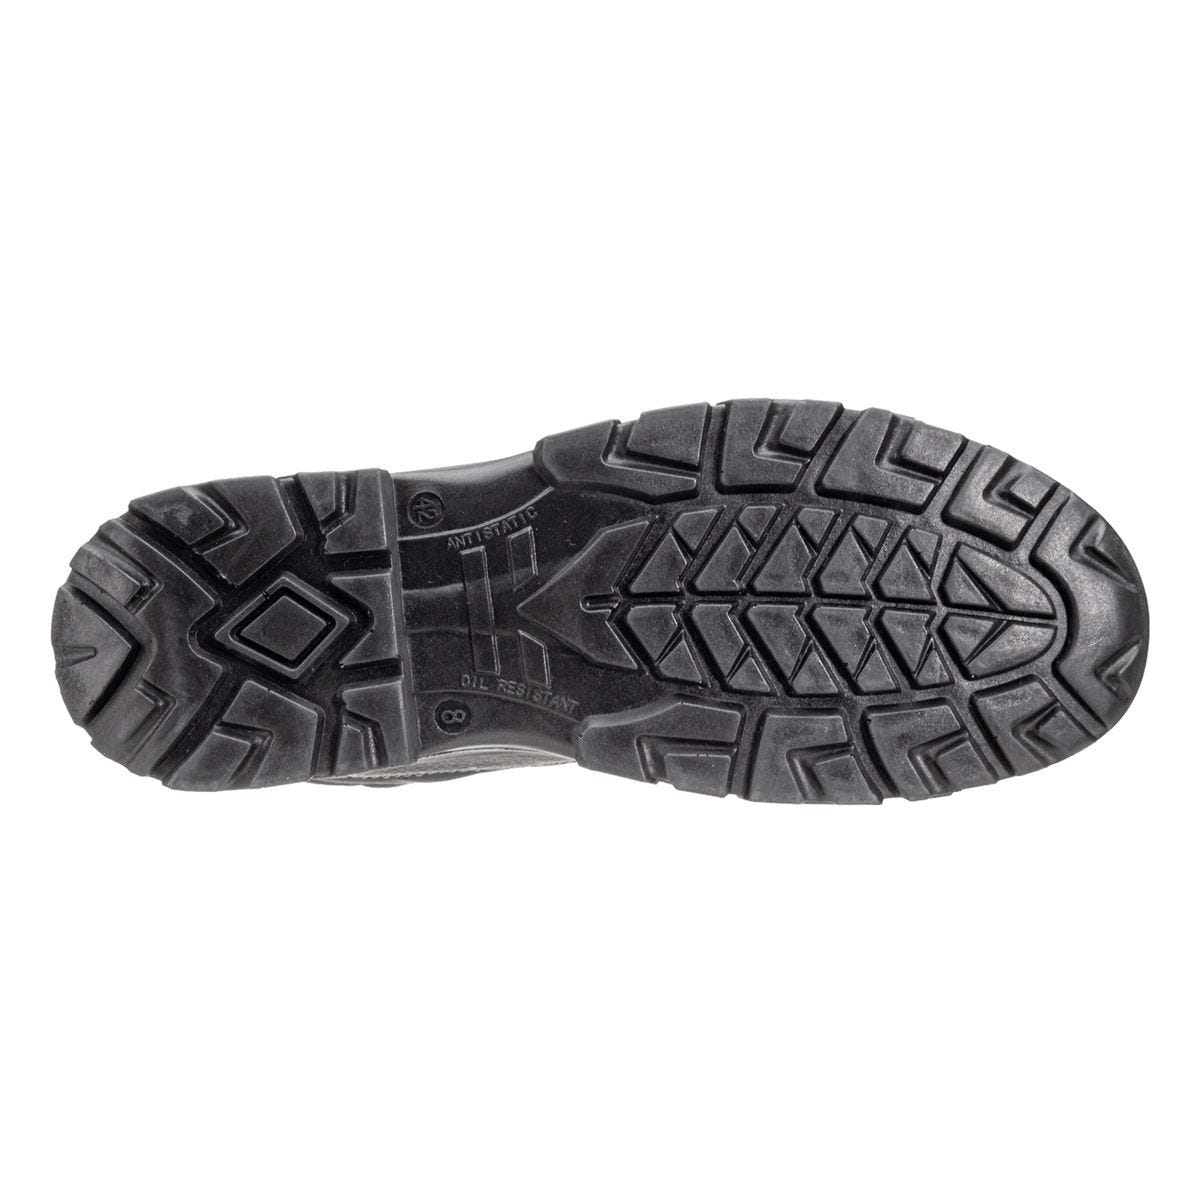 Chaussures de sécurité hautes Azurite II S3 ESD noir - Coverguard - Taille 41 2